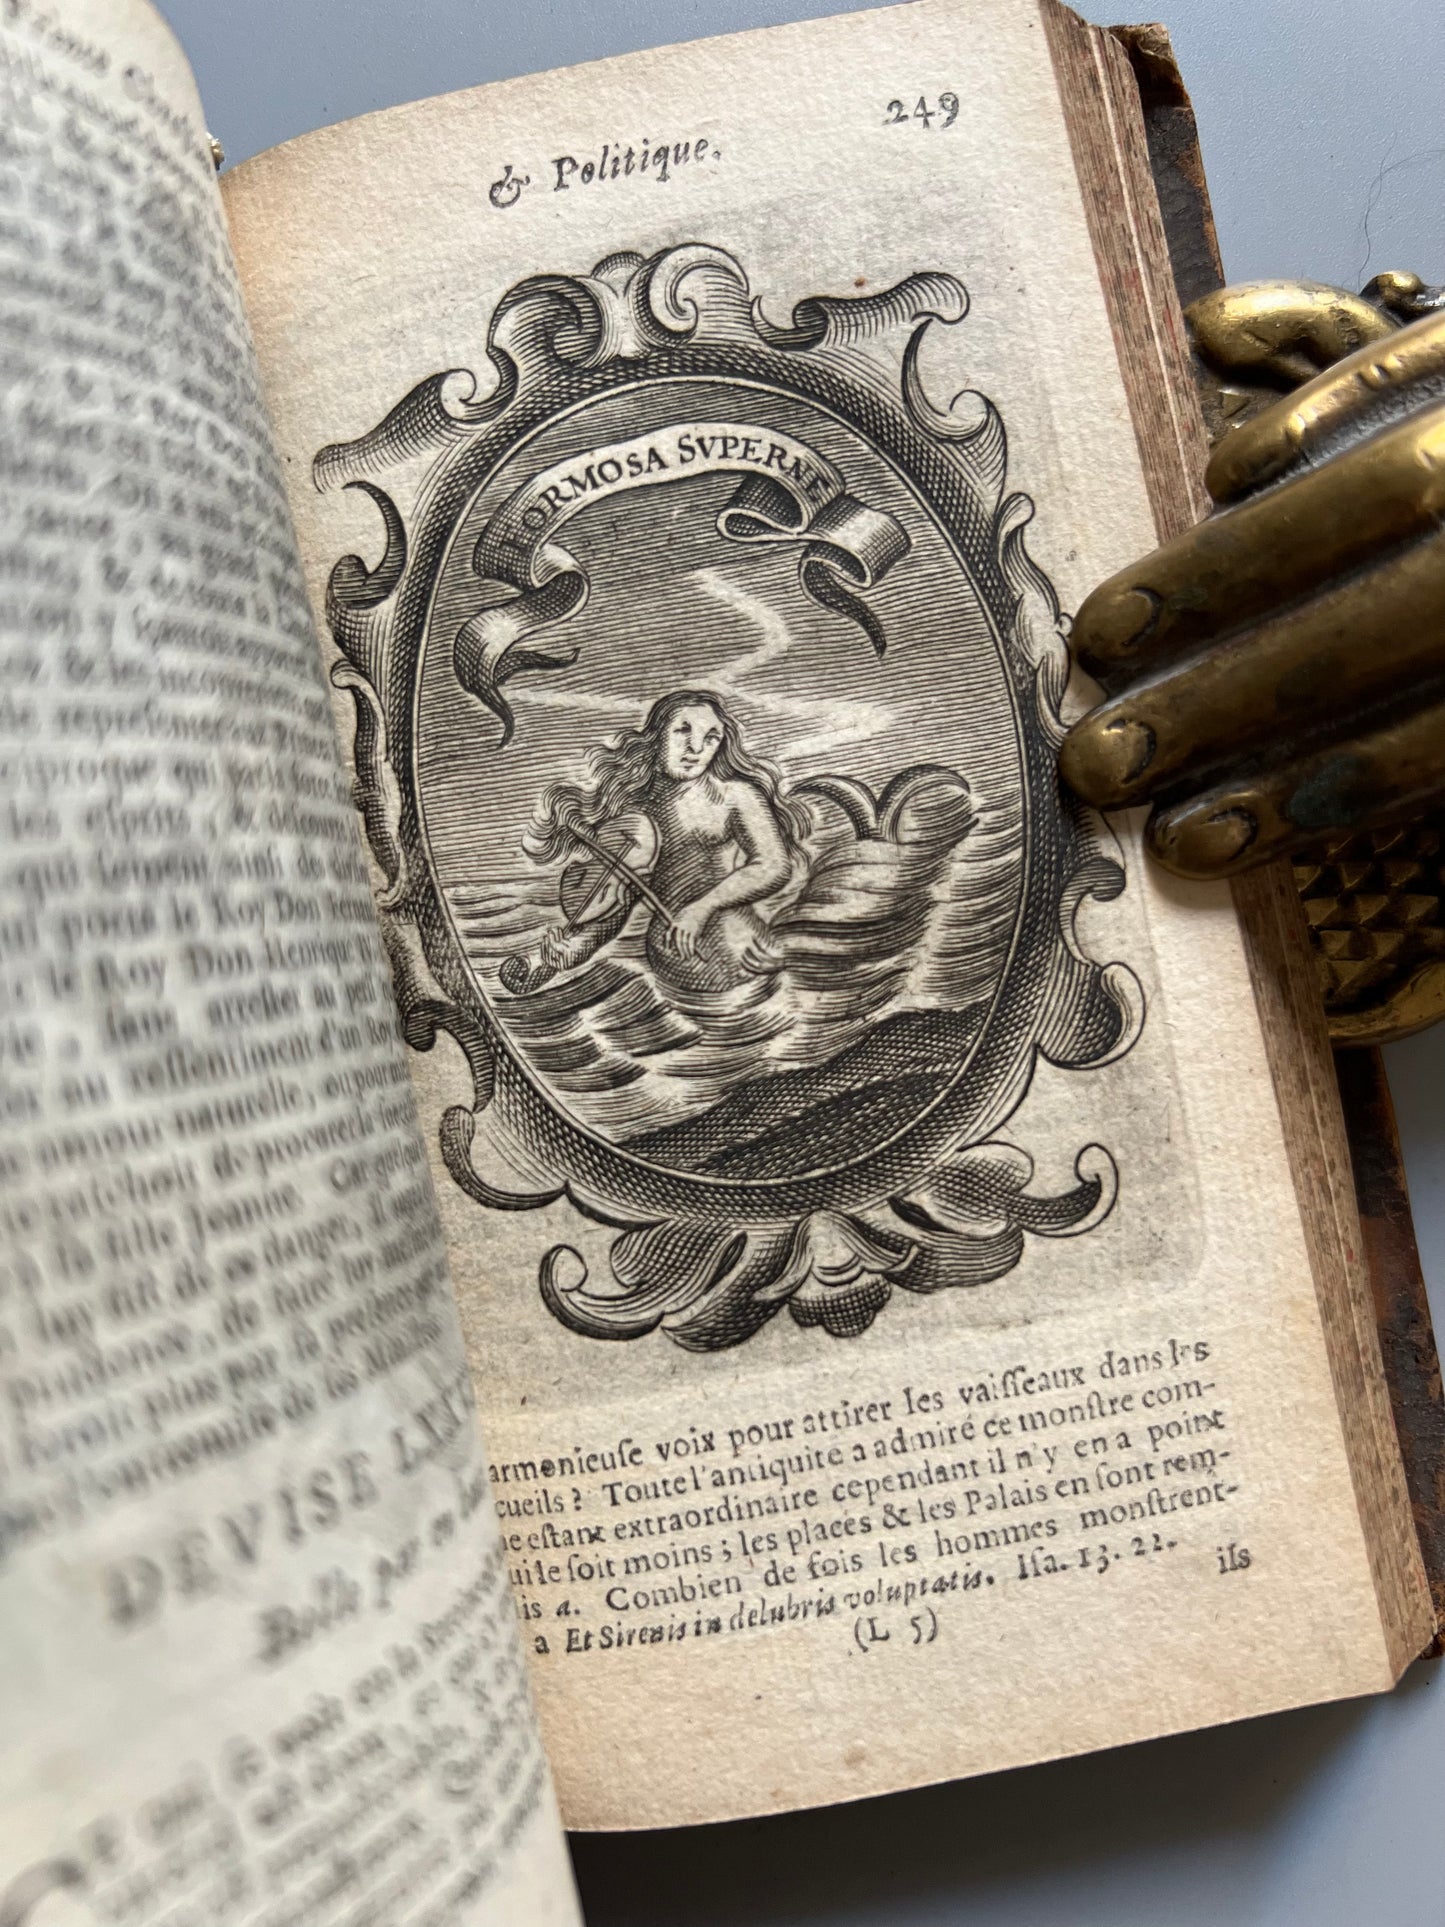 Le Prince chrestien et politique, traduit de l'espagnol de Dom Diègue Savedra - Compagnie des Libraires du palais, 1668